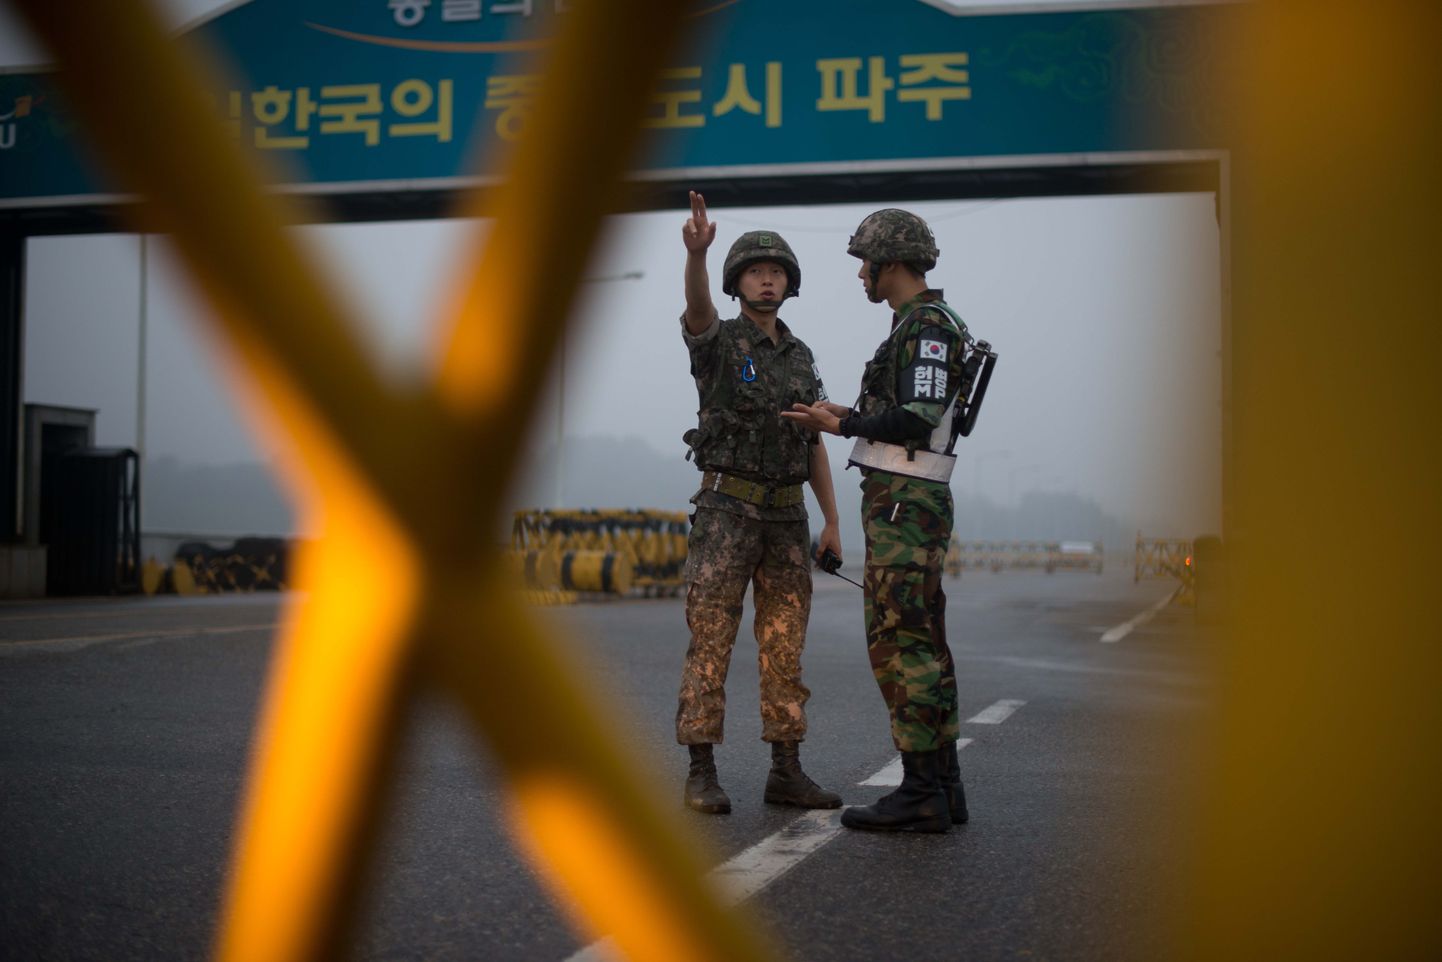 Lõuna-Korea sõdurid seisavad sõjaväe kontrollpunkti juures, kust viib tee Kaesongi tööstuspargi juurde.